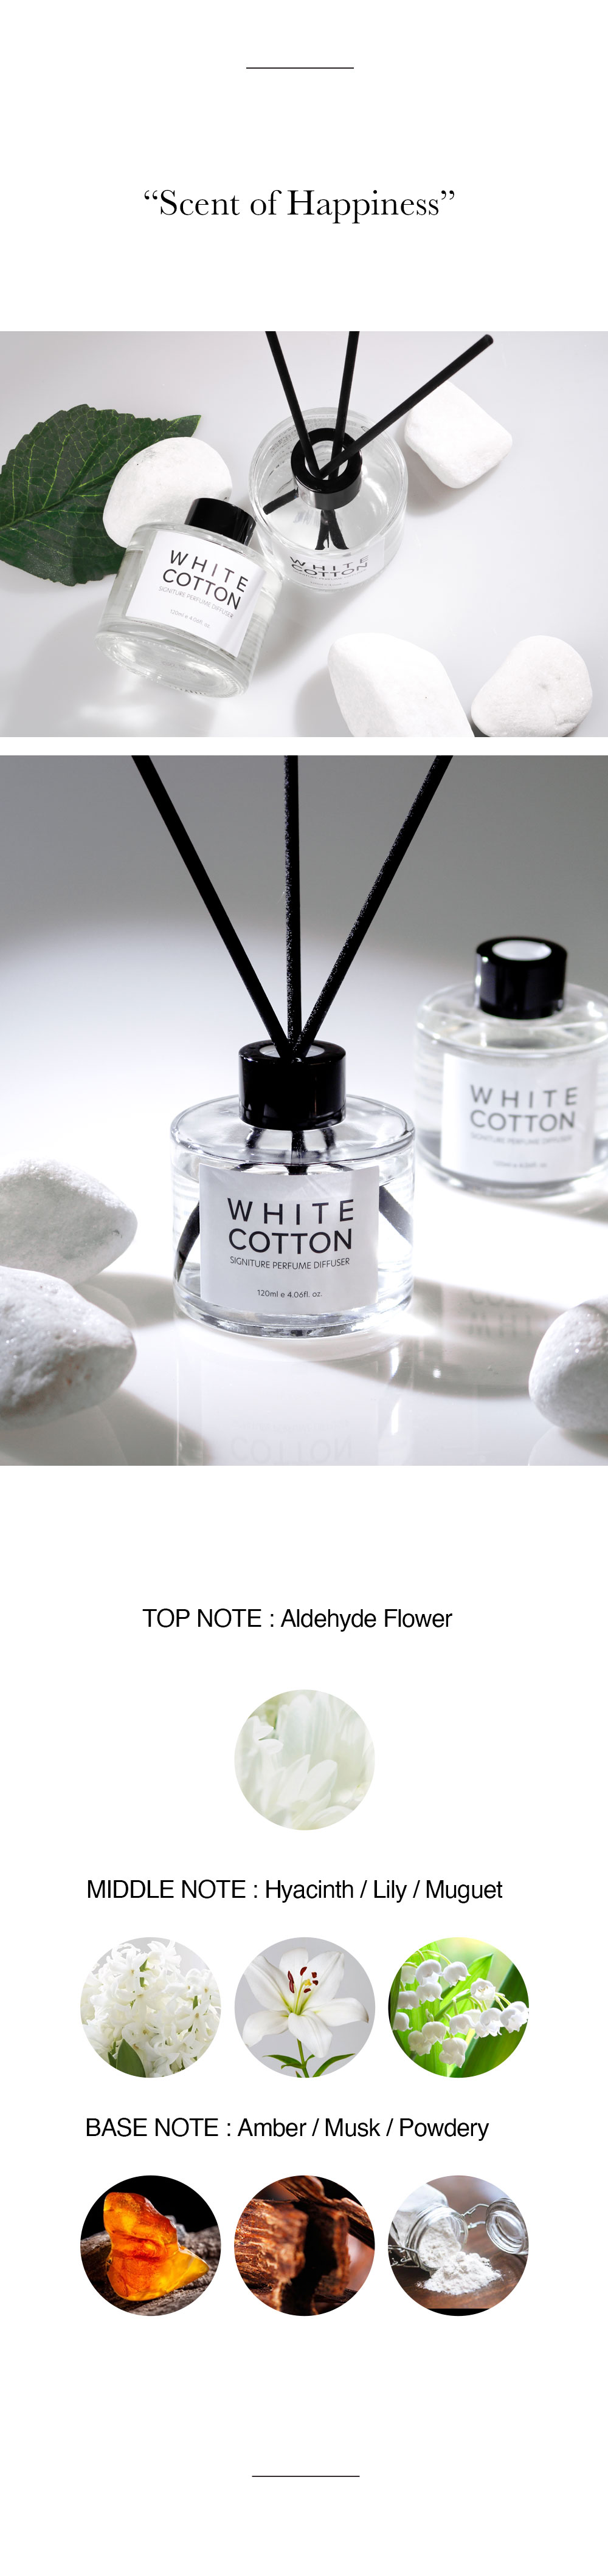 White.Cotton_whitecotton-signature-perfume-diffuser_detail-page02_02_100535.jpg